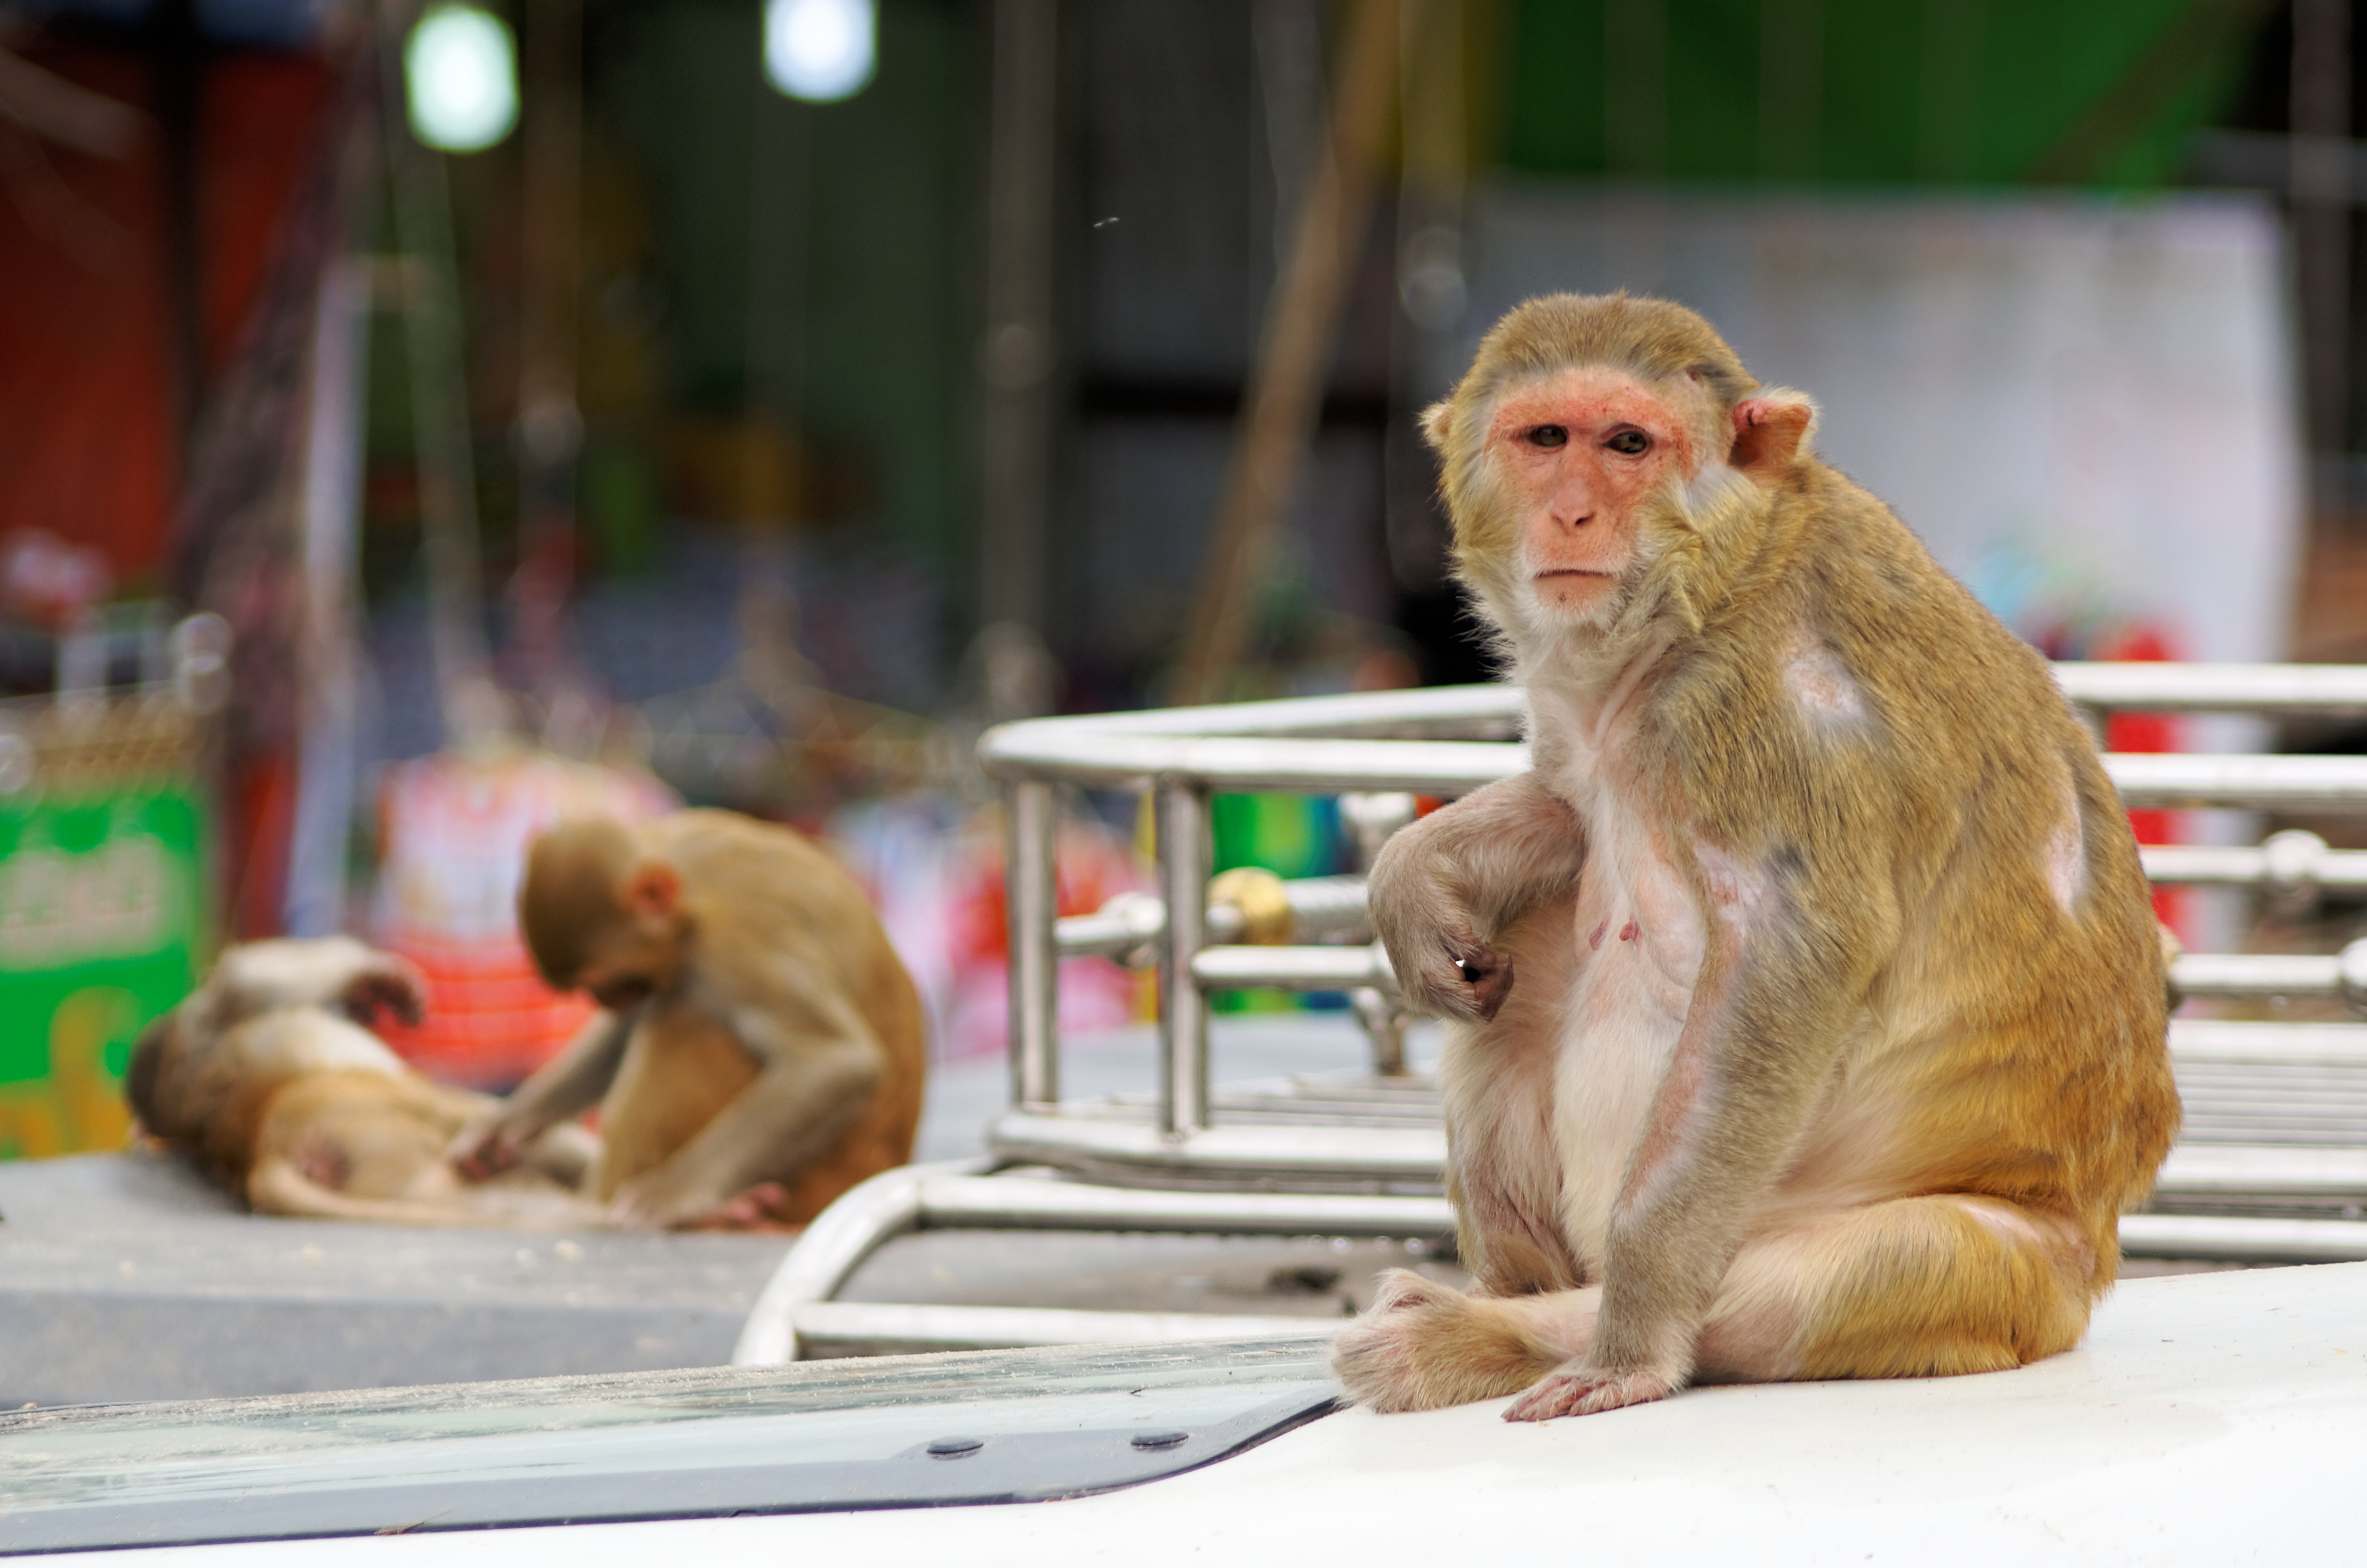 20160802 - Rhesus macaque - Mount Popa, Myanmar - 7072 DxO